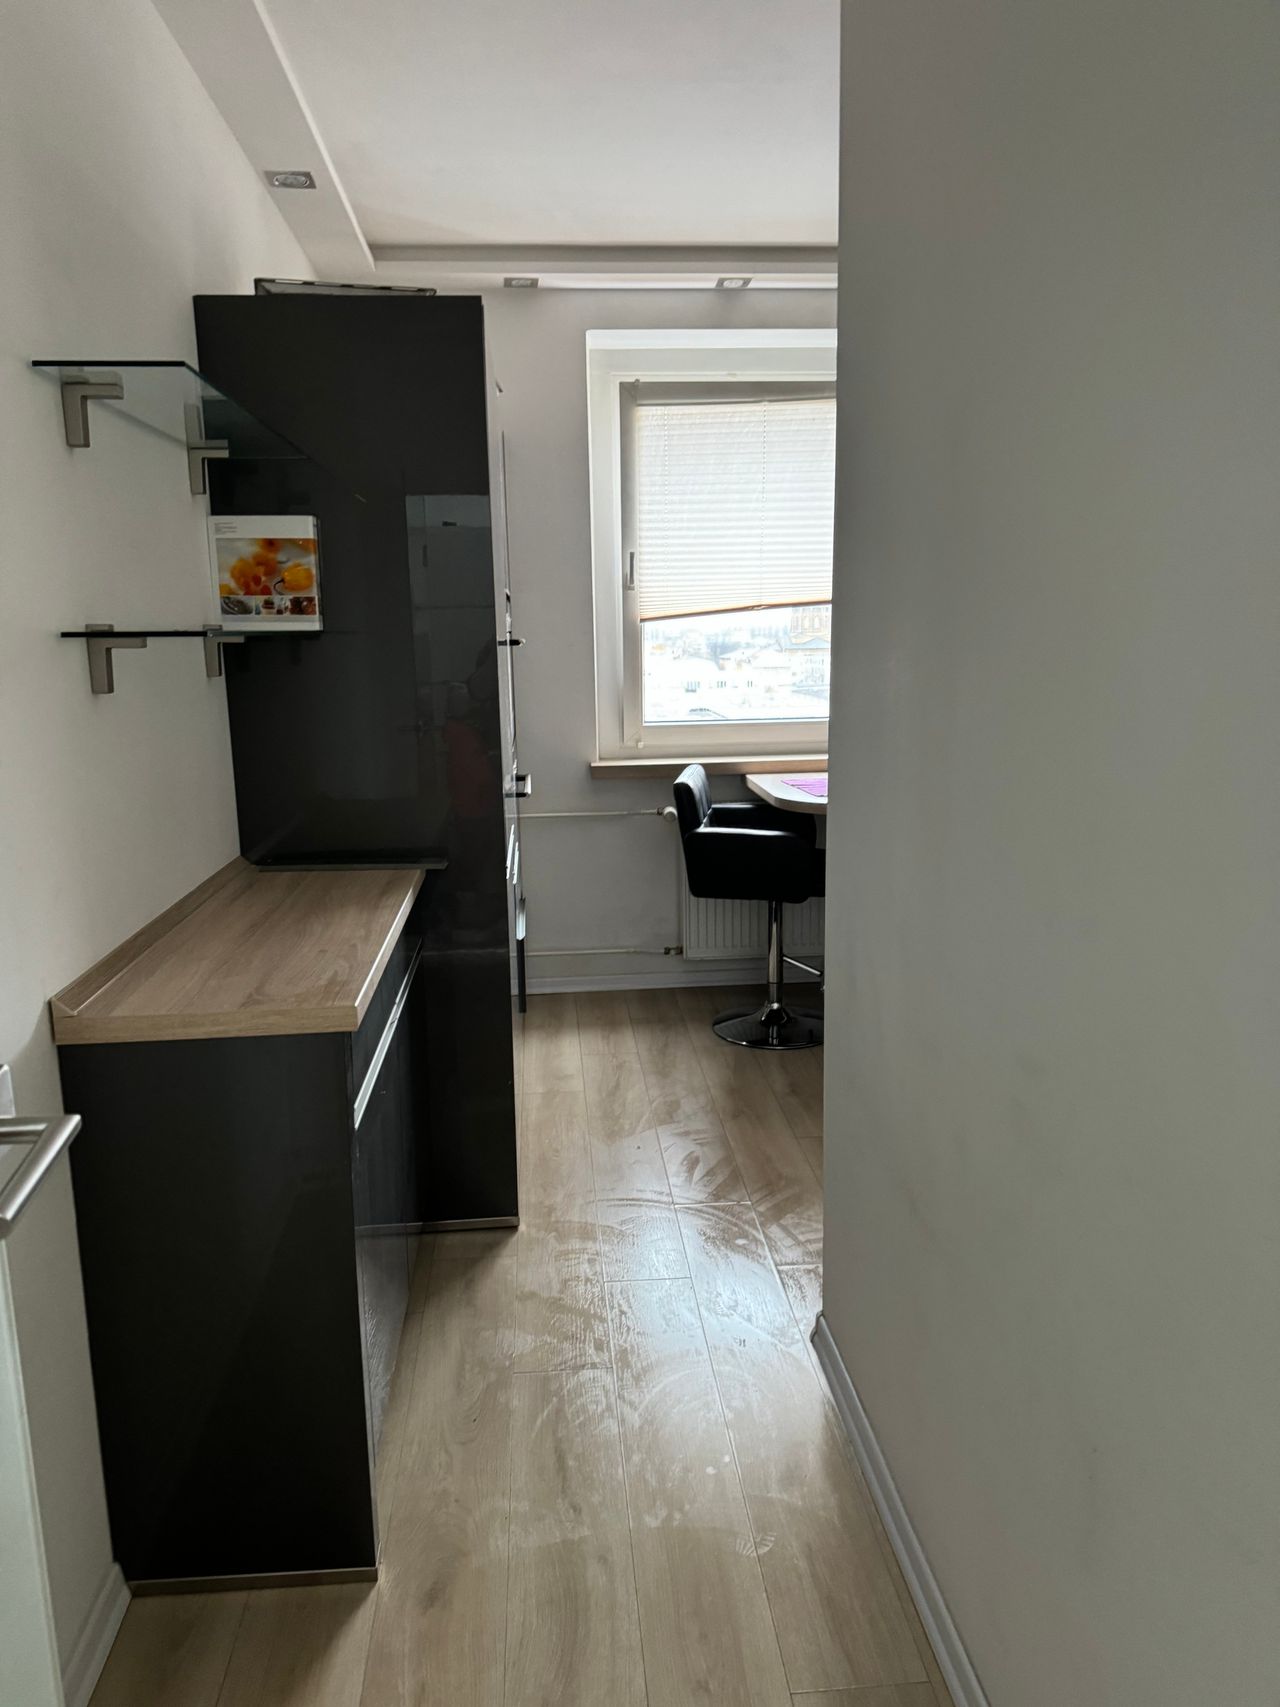 Amazing & fantastic apartment in Mitte